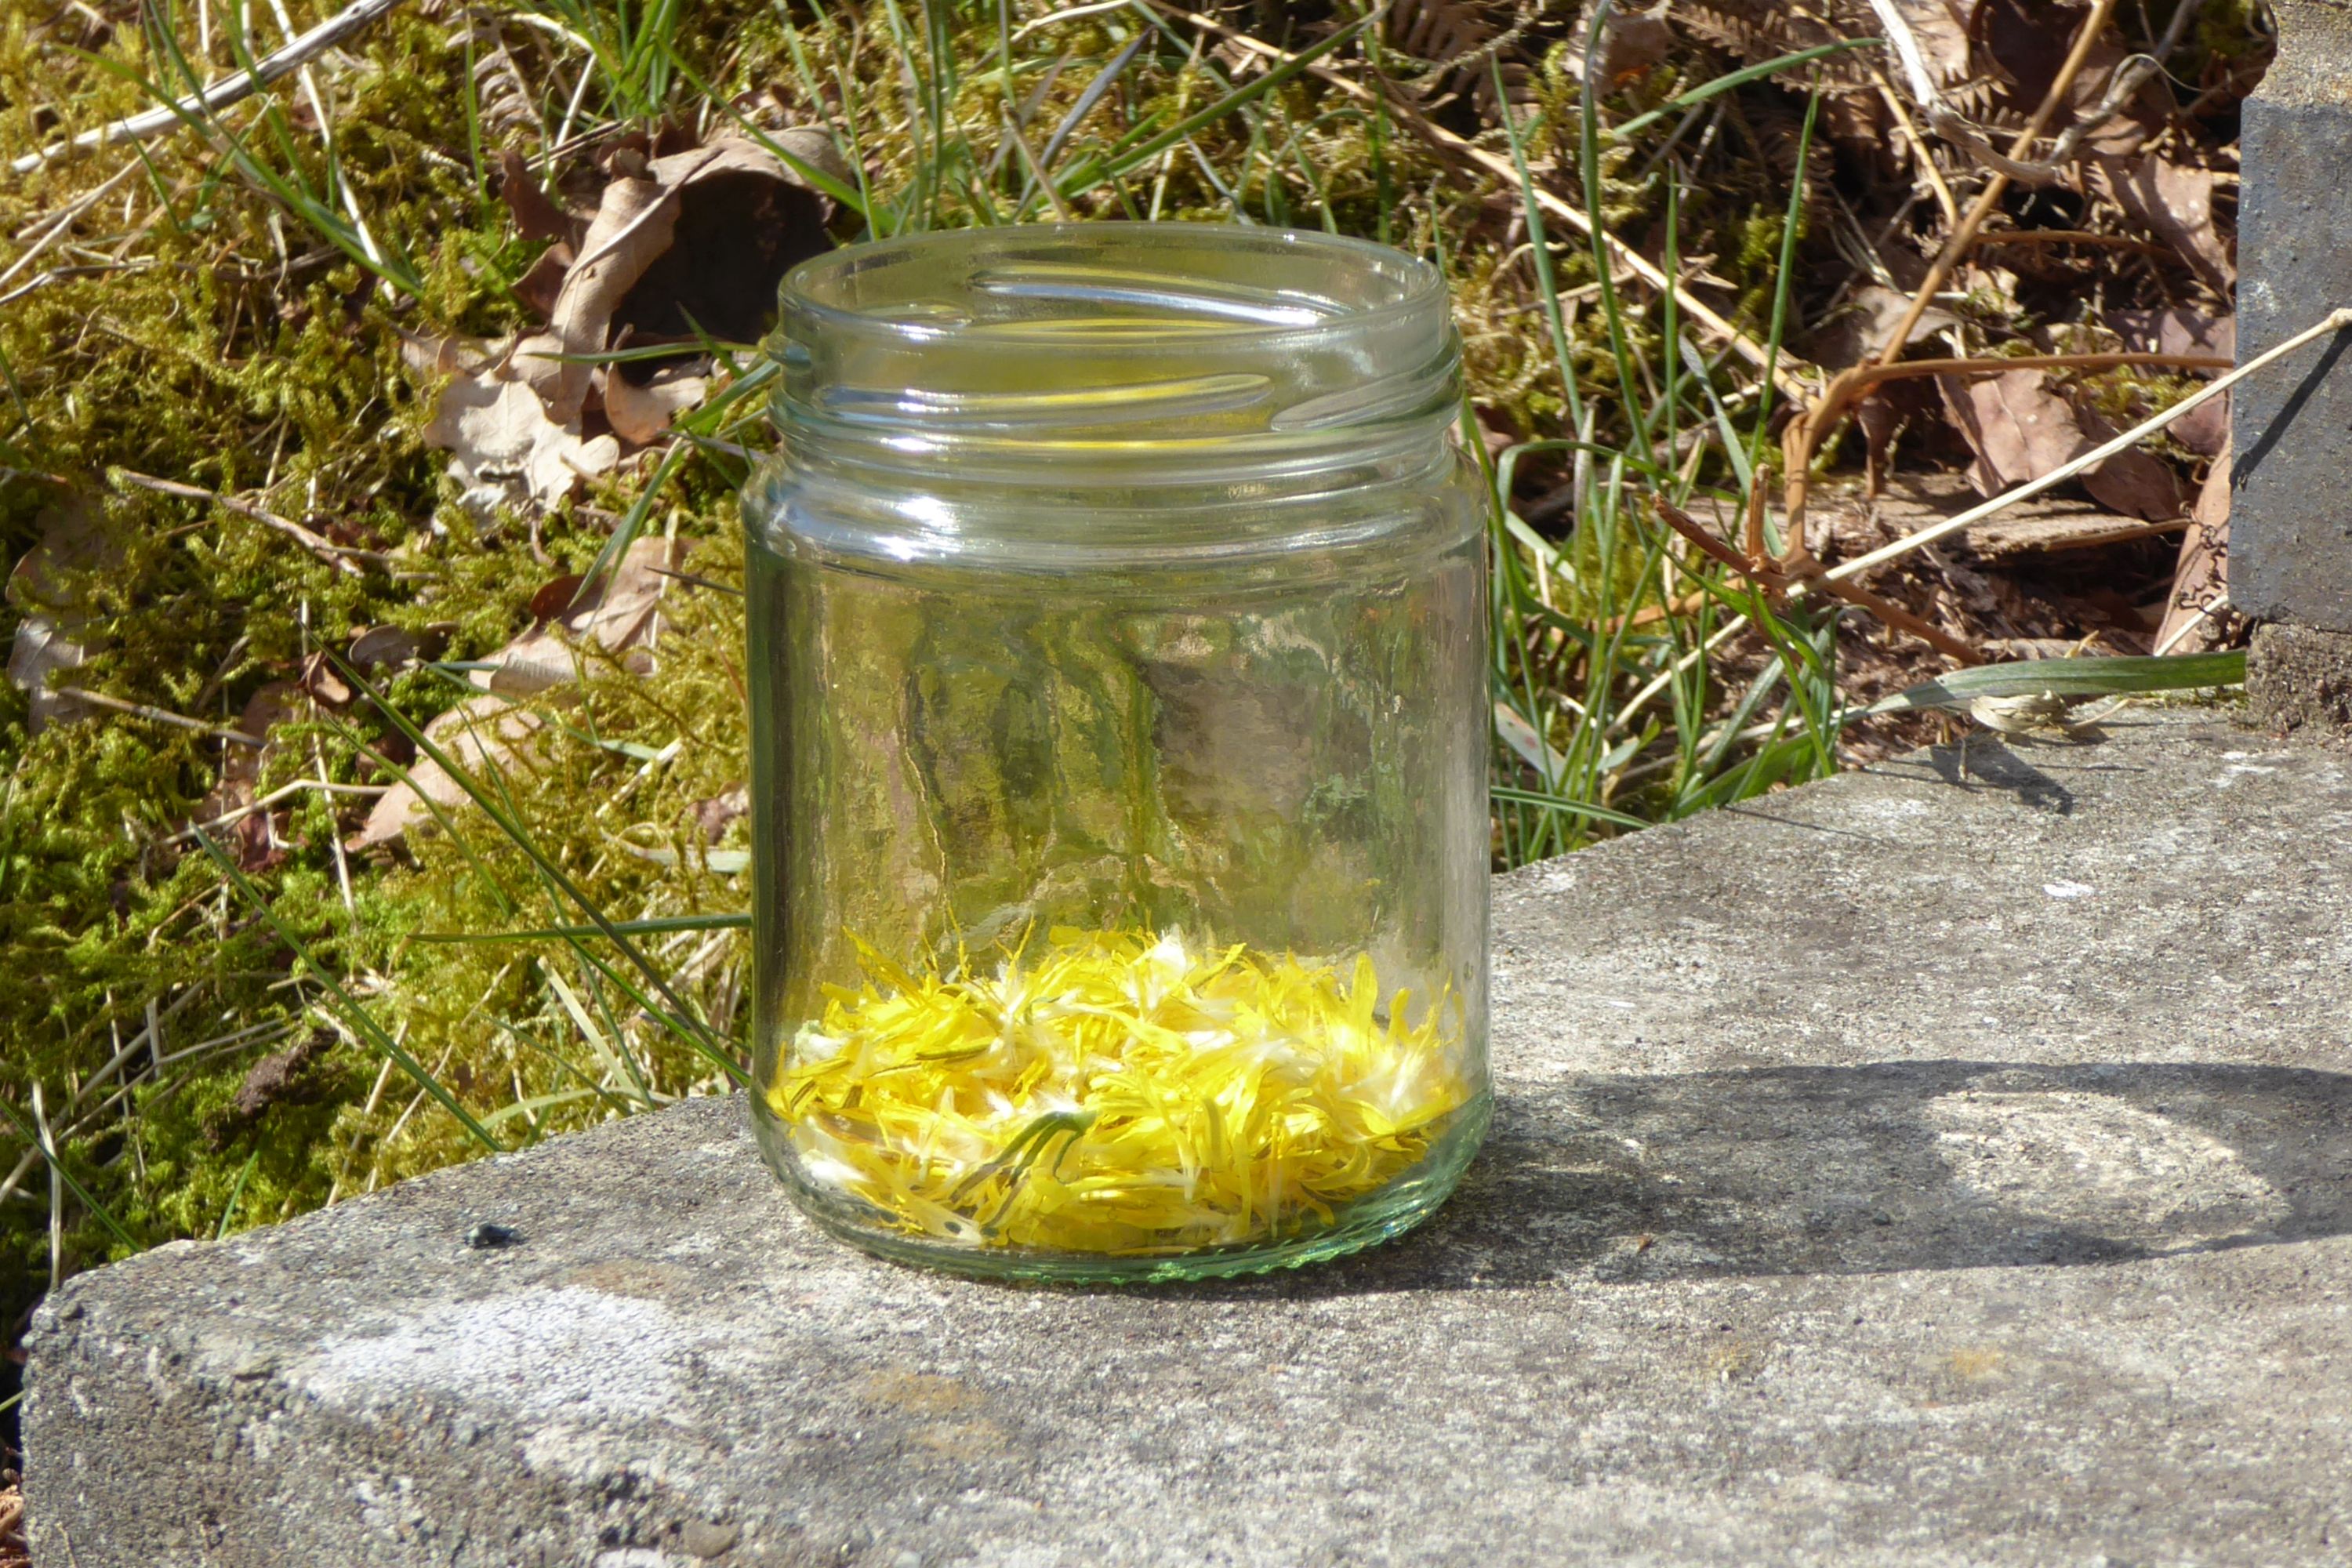 Dandelion petals in a jar